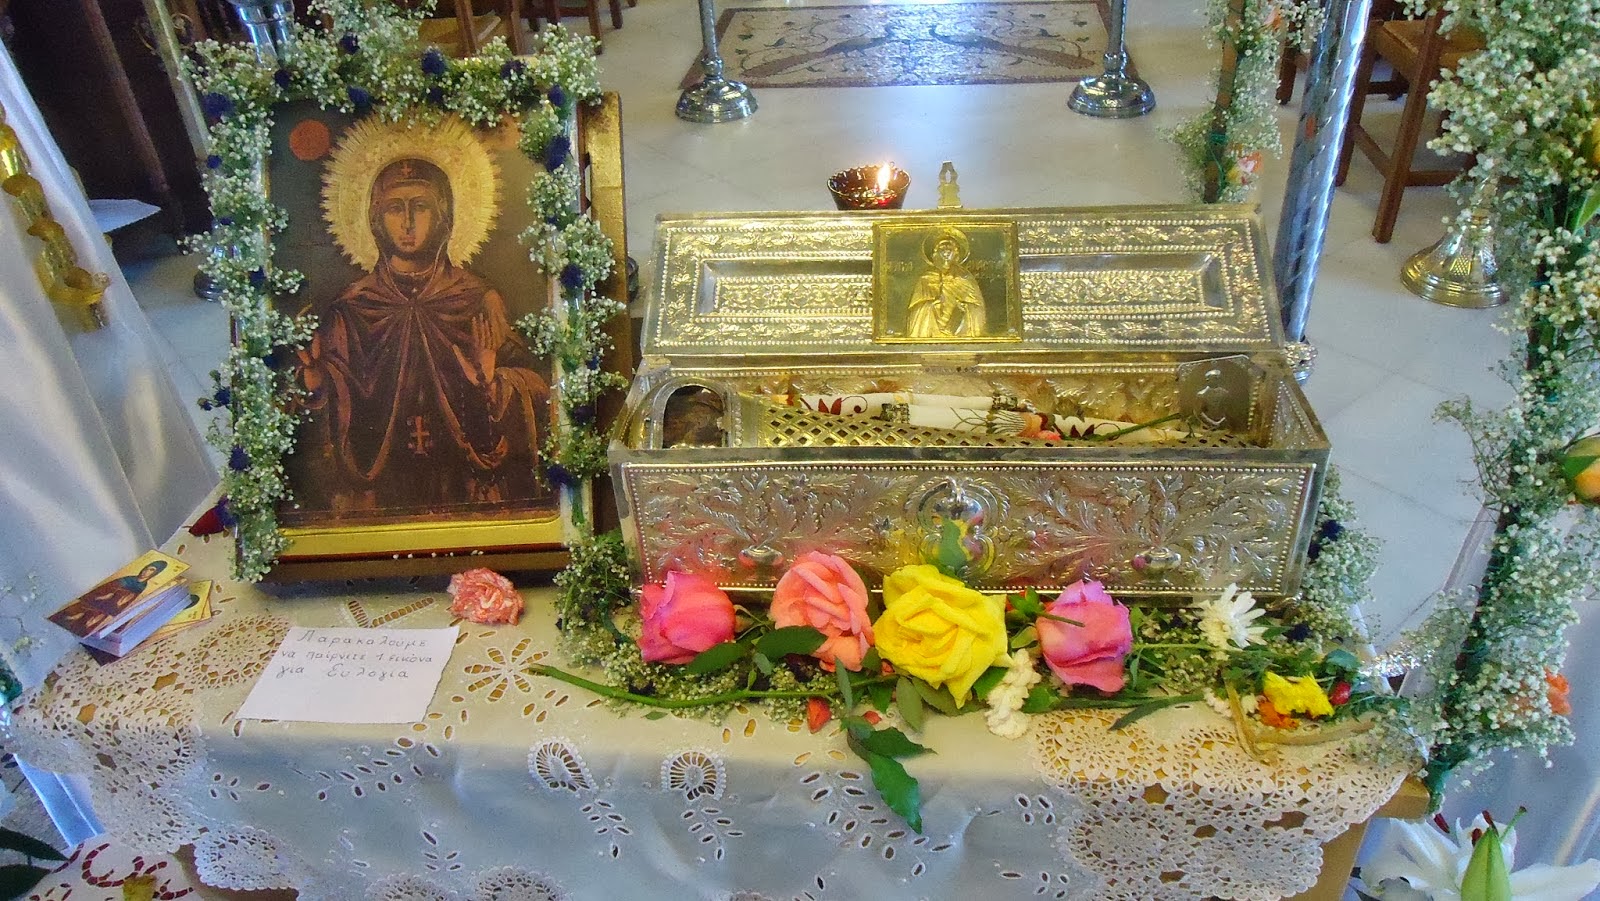 Ιερό λείψανο της Αγίας Αναστασίας της Ρωμαίας στην Ιερά Μονή Γρηγορίου Αγίου Όρους http://leipsanothiki.blogspot.be/